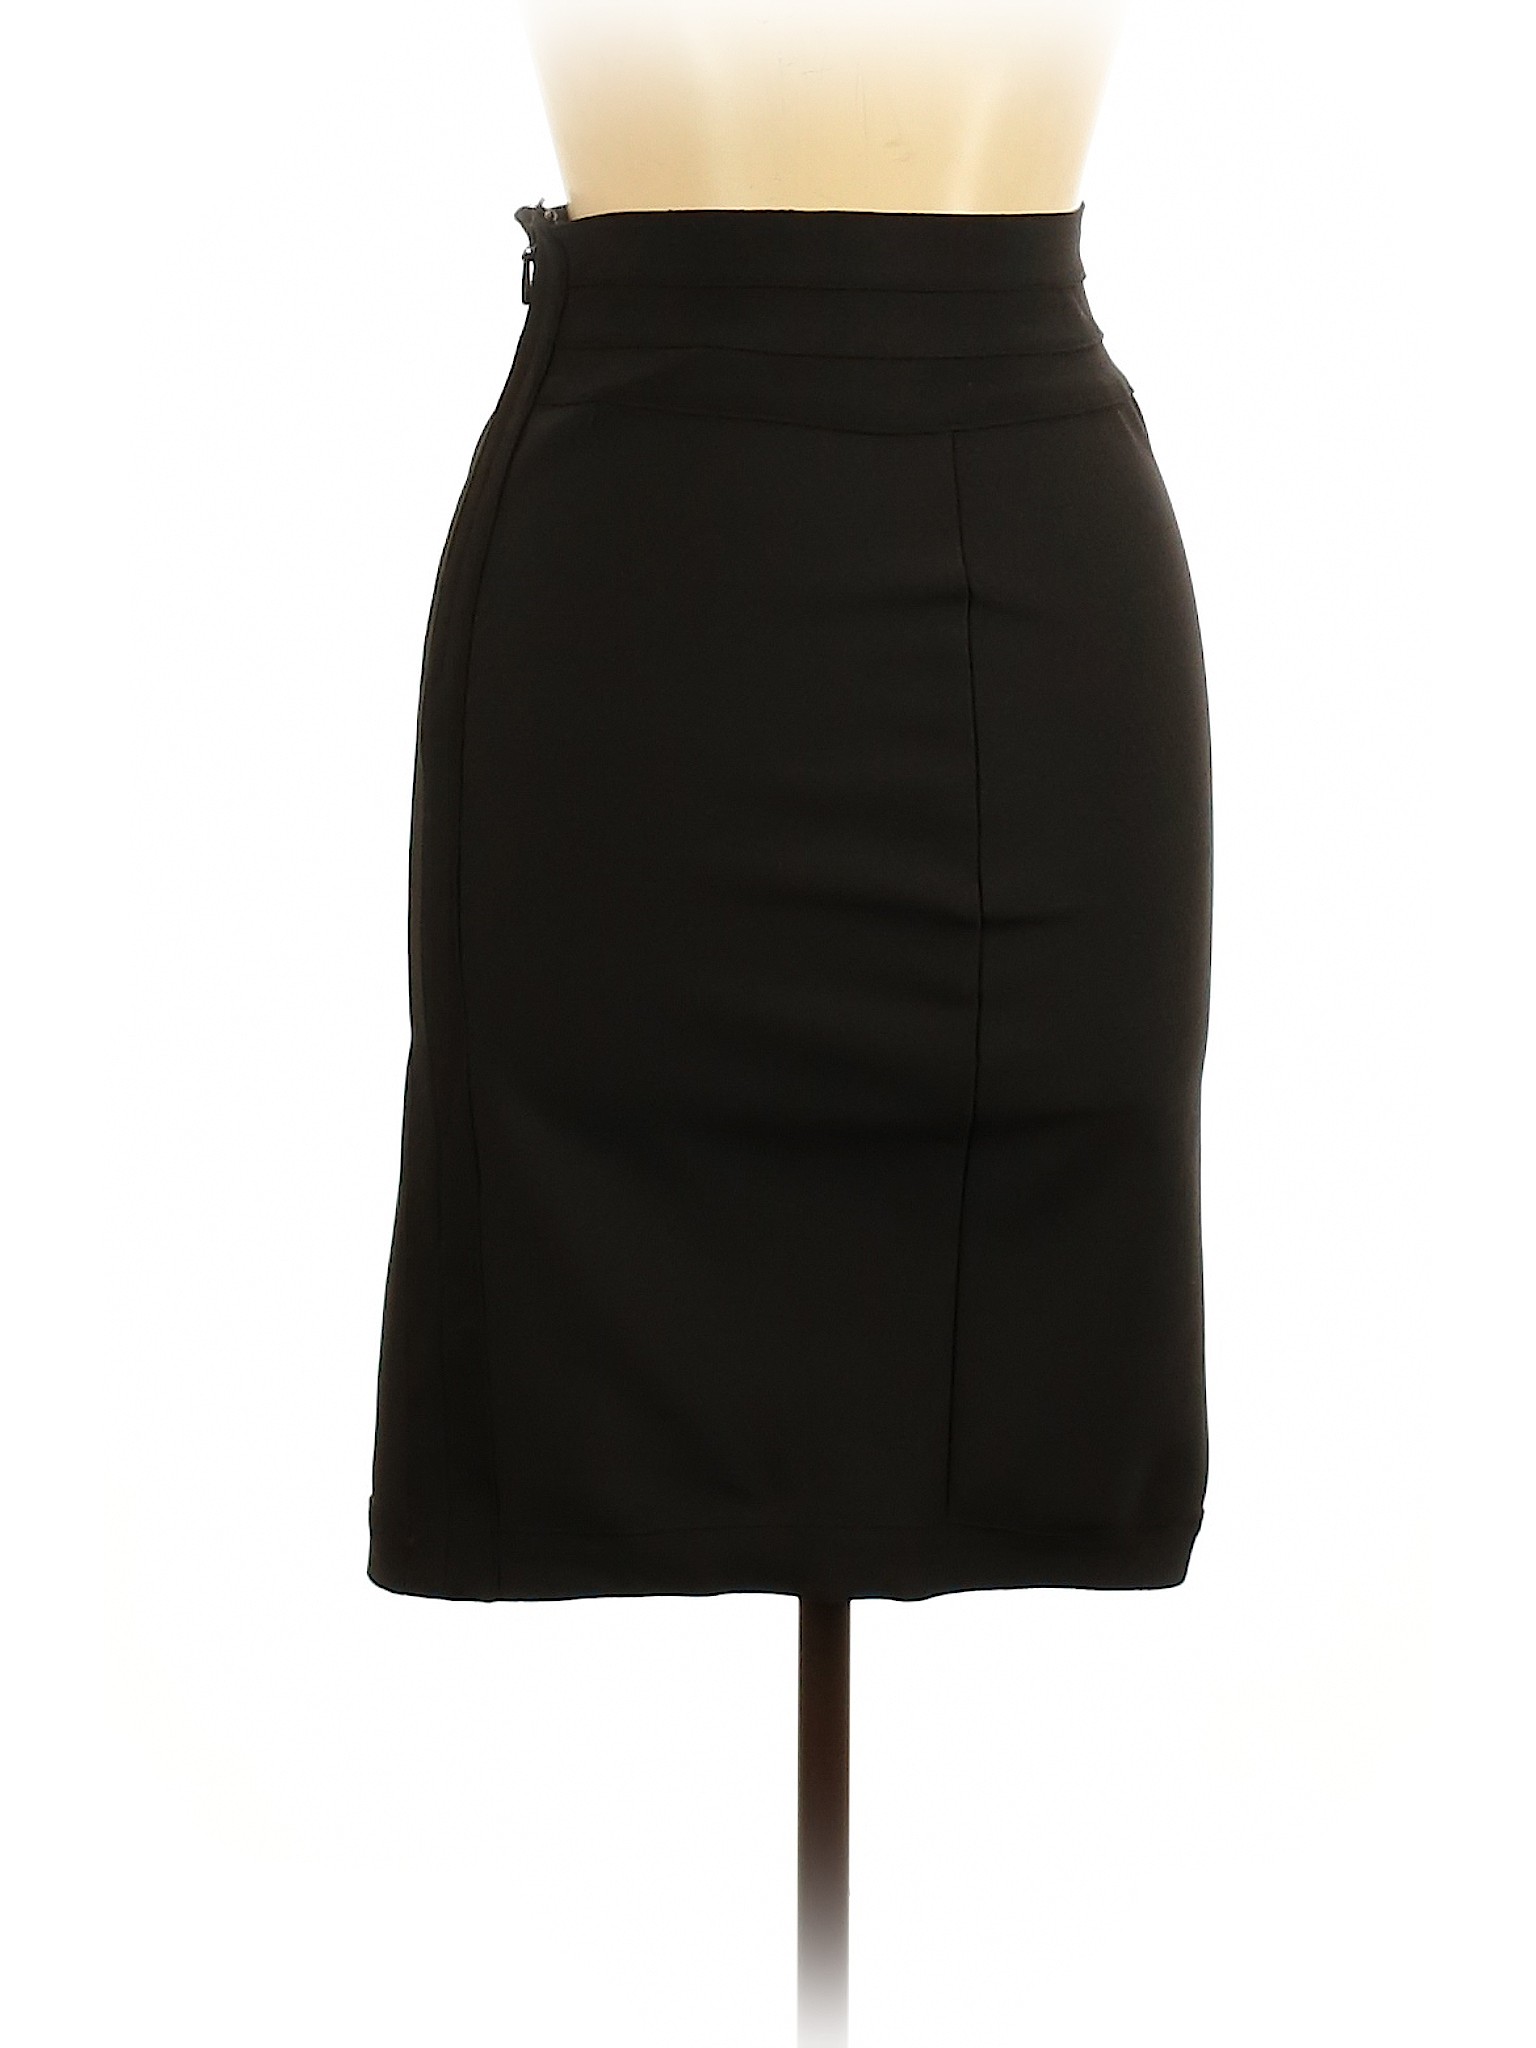 Forever 21 Women Black Casual Skirt L | eBay